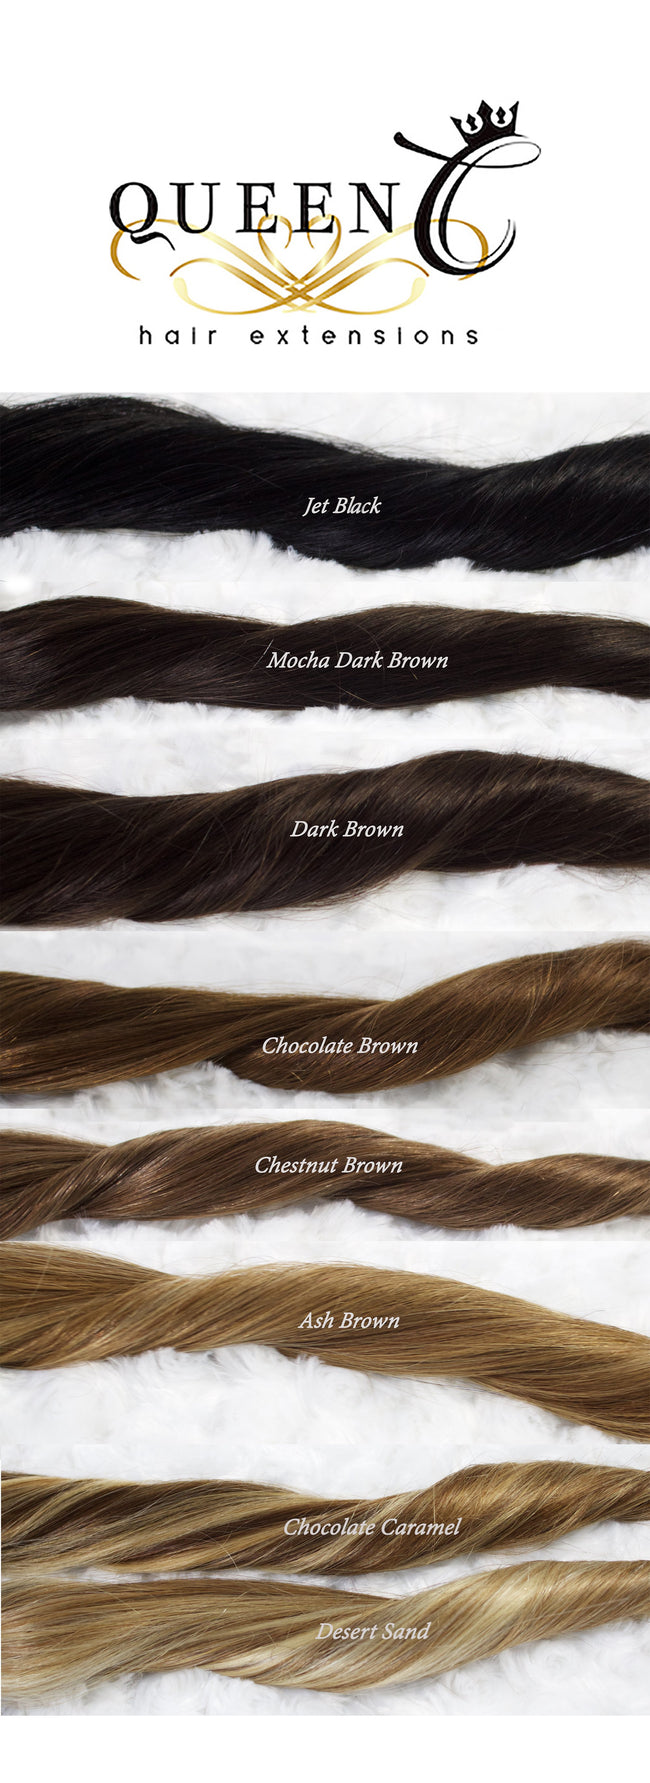 Queen C Hair Clip & Tie Ponytail 16" - 80g / Dark Brown / 79.99 Clip & Tie Ponytail - Dark Brown (2)